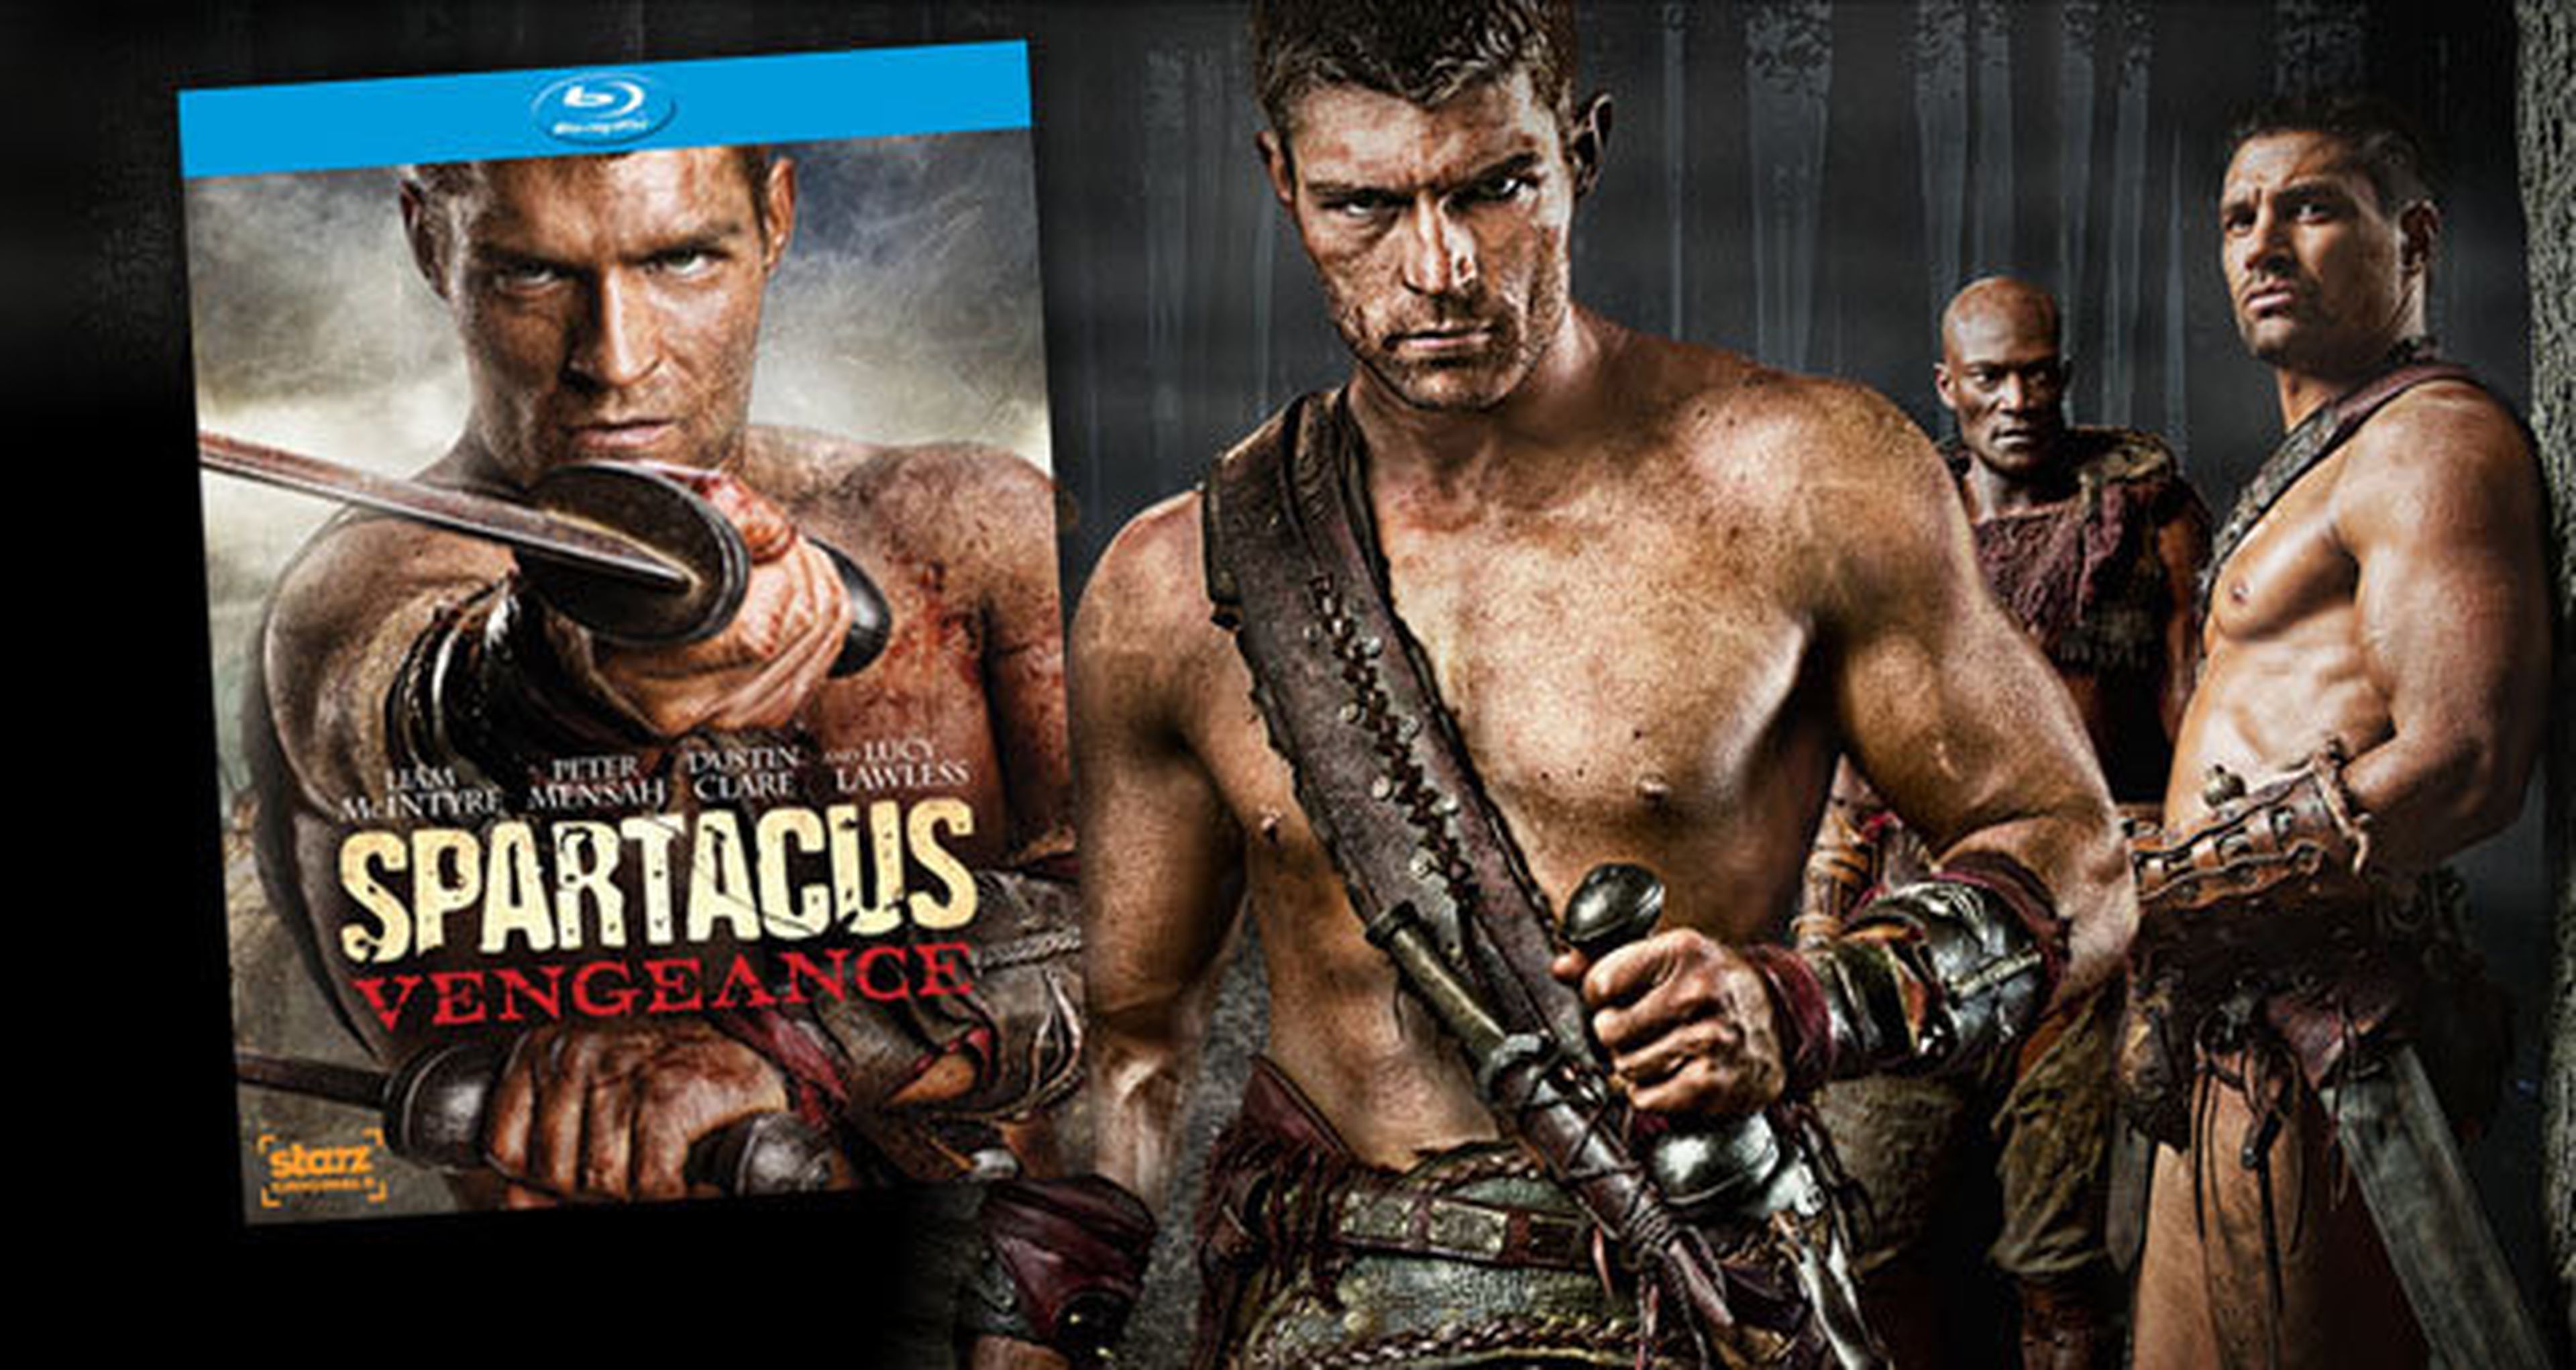 Mañana se estrena en DVD y Blu-Ray Spartacus: venganza